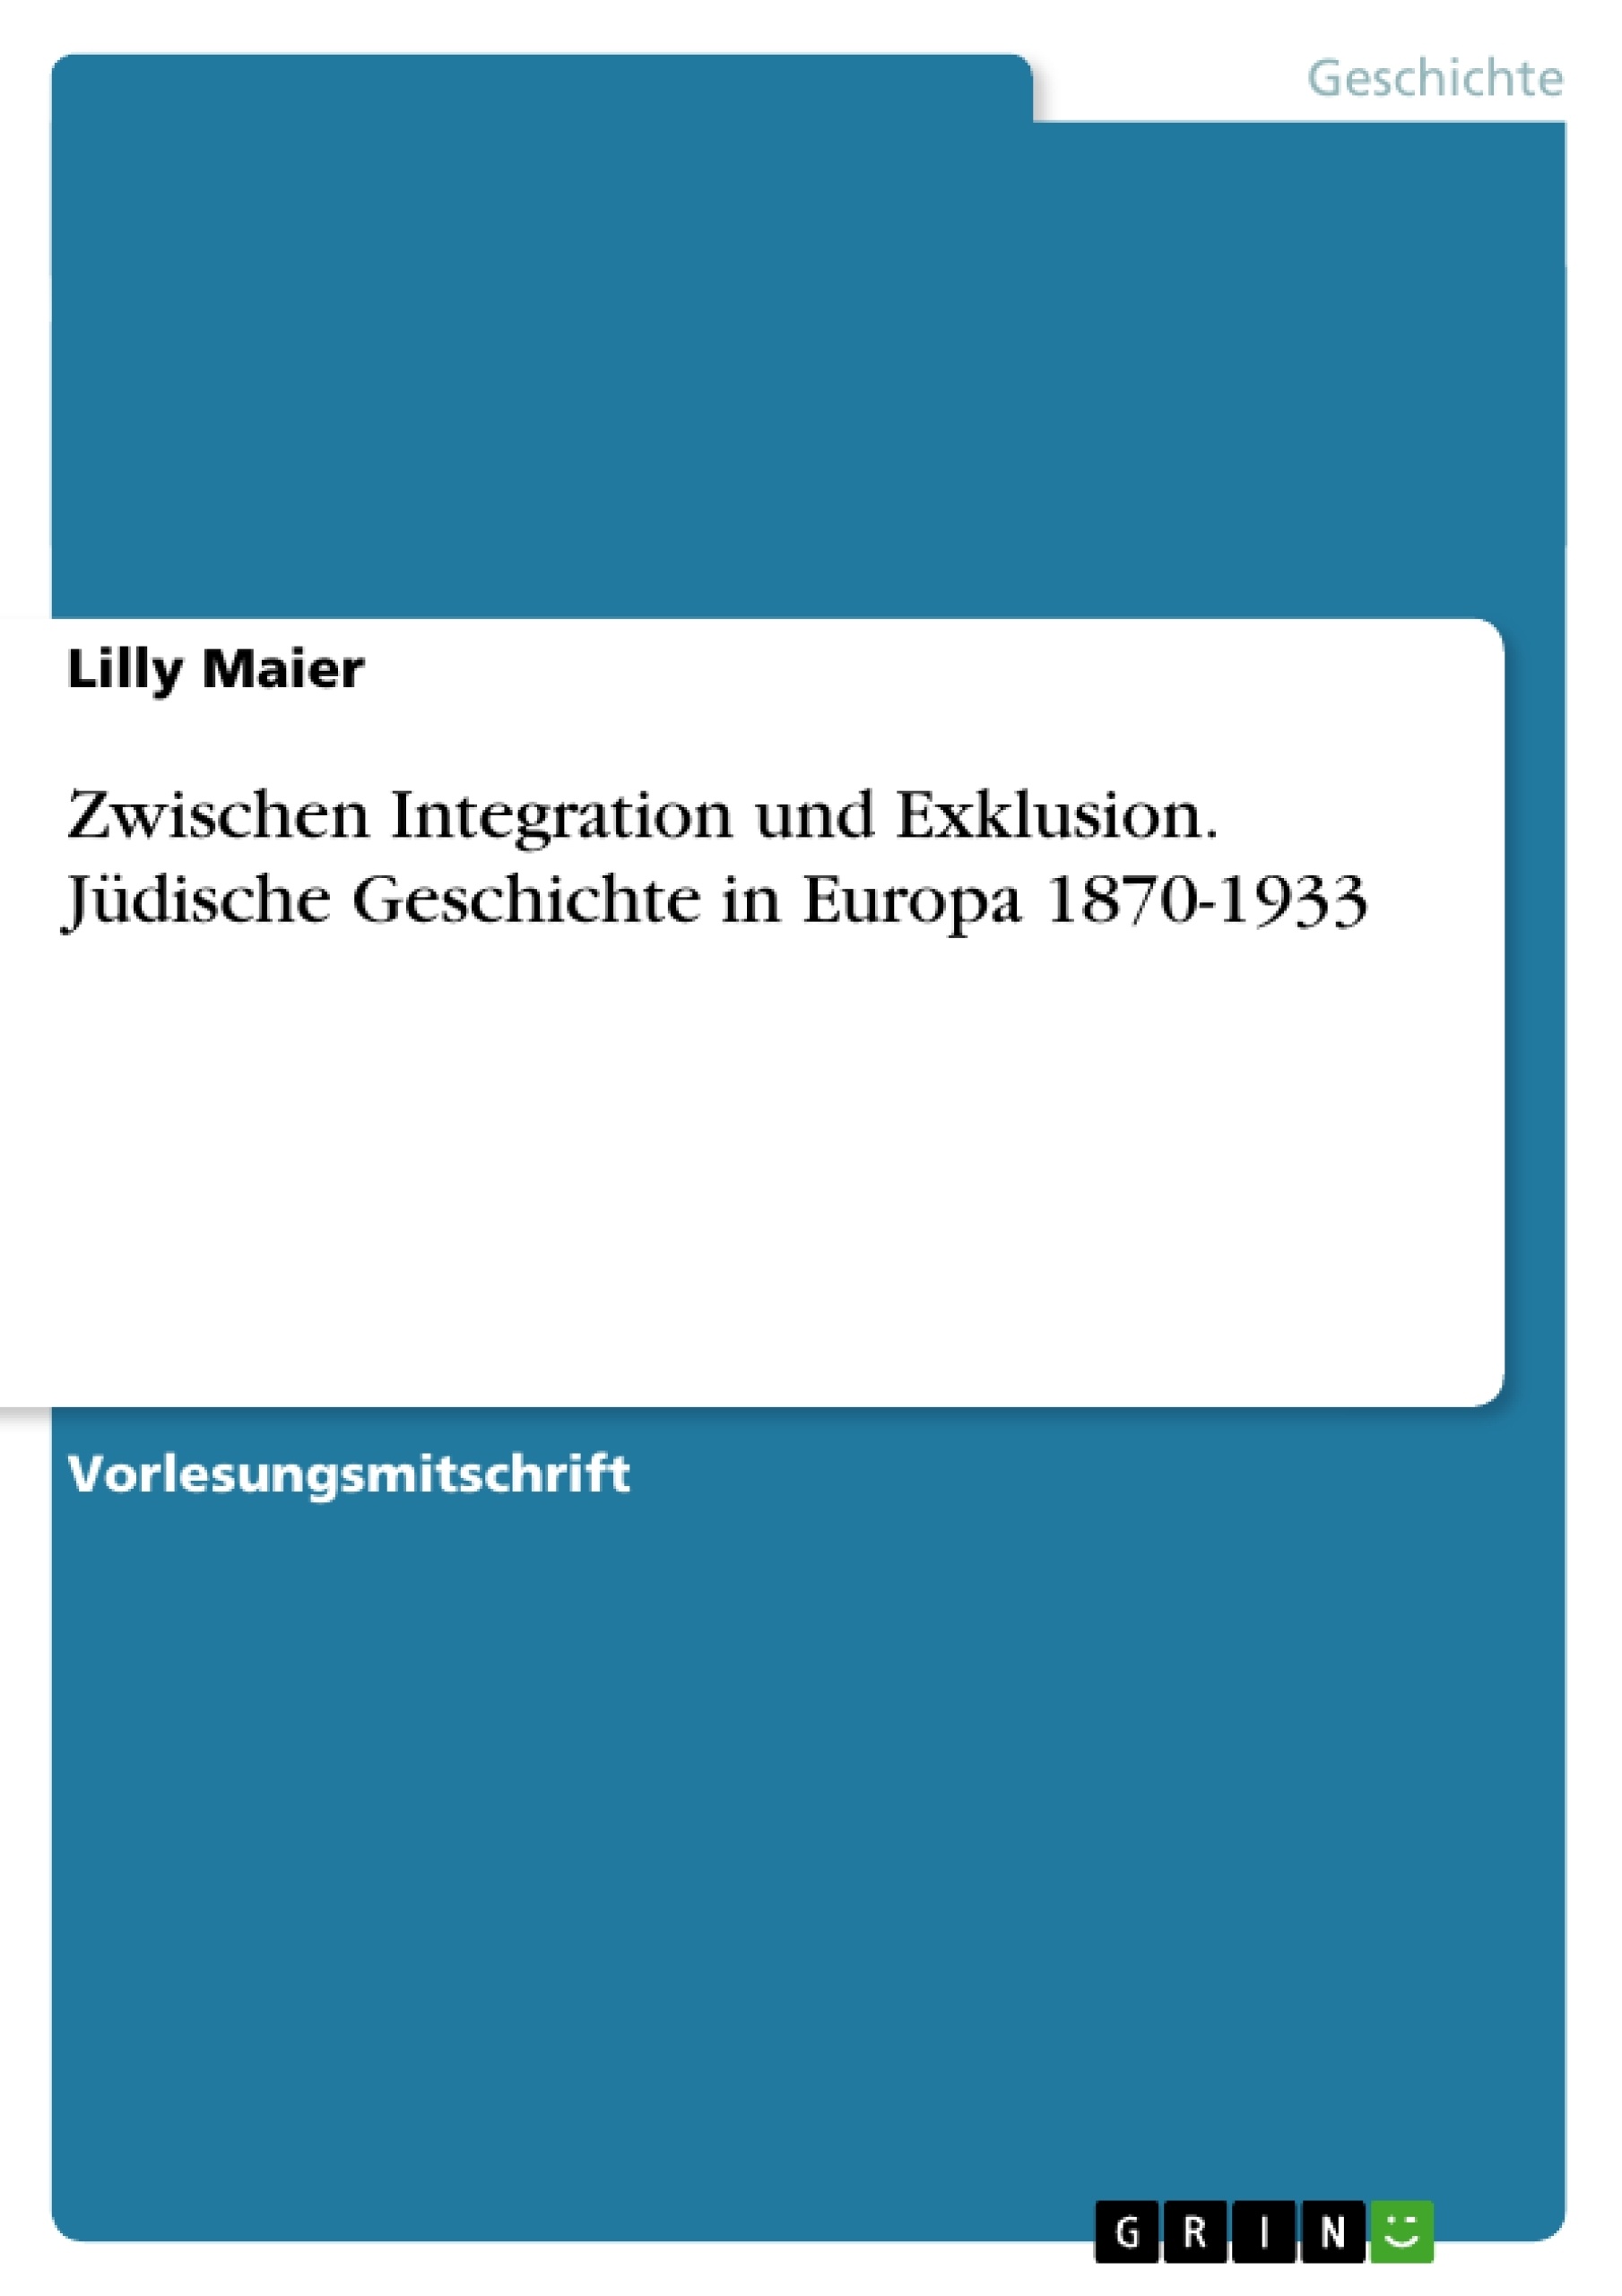 Titel: Zwischen Integration und Exklusion. Jüdische Geschichte in Europa 1870-1933